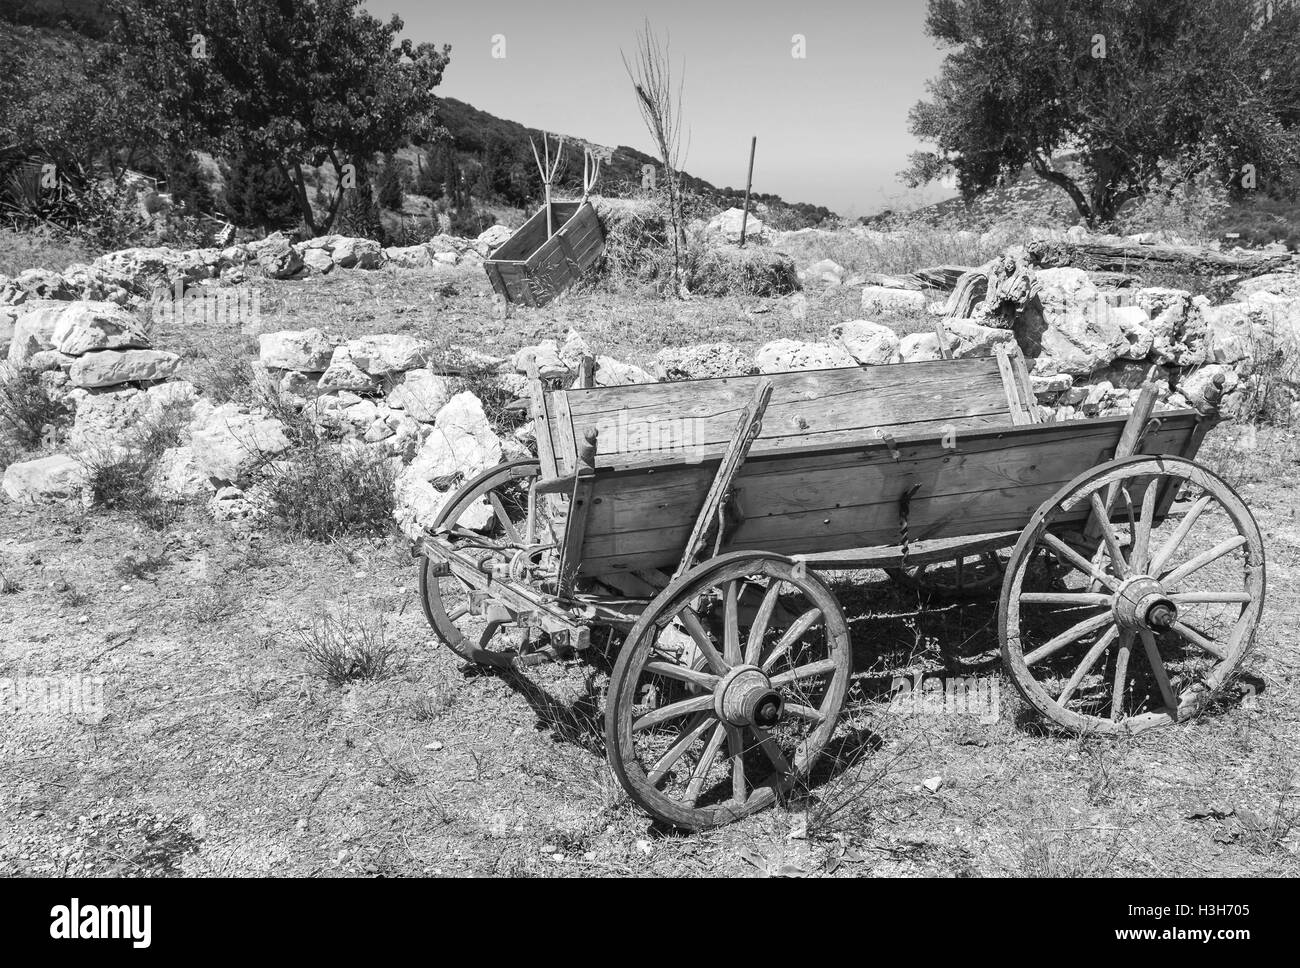 Leere alte ländliche Holzwagen, schwarz / weiß-Foto Stockfoto